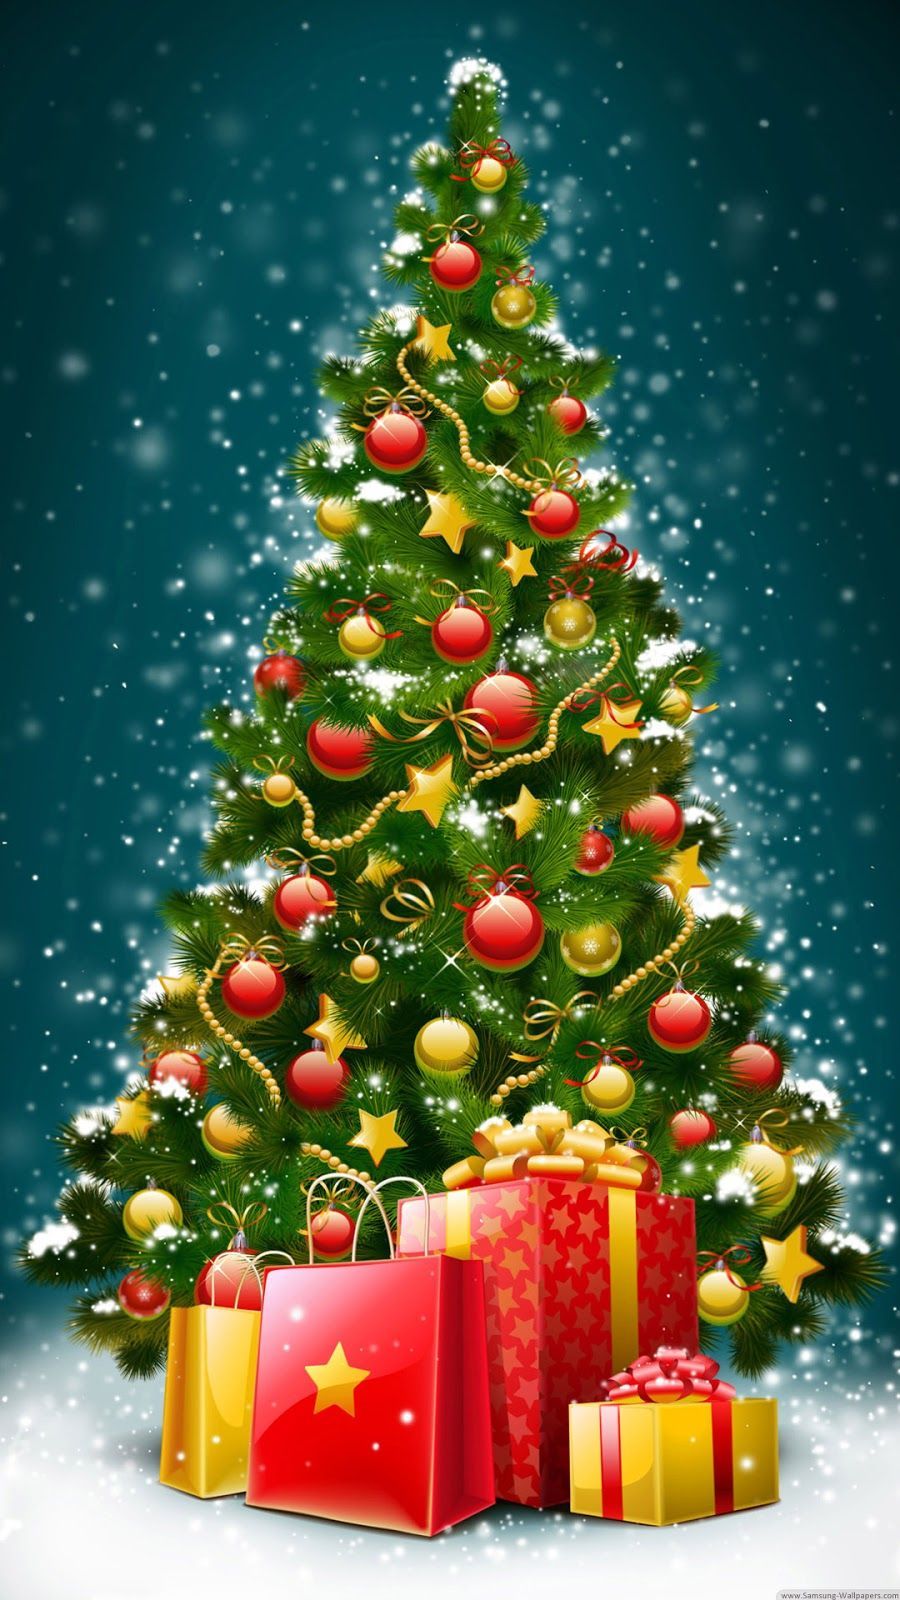 Free Animated Christmas Wallpaper For Christmas Trees 3. Christmas Tree Gif, Christmas Wallpaper Free, Christmas Image